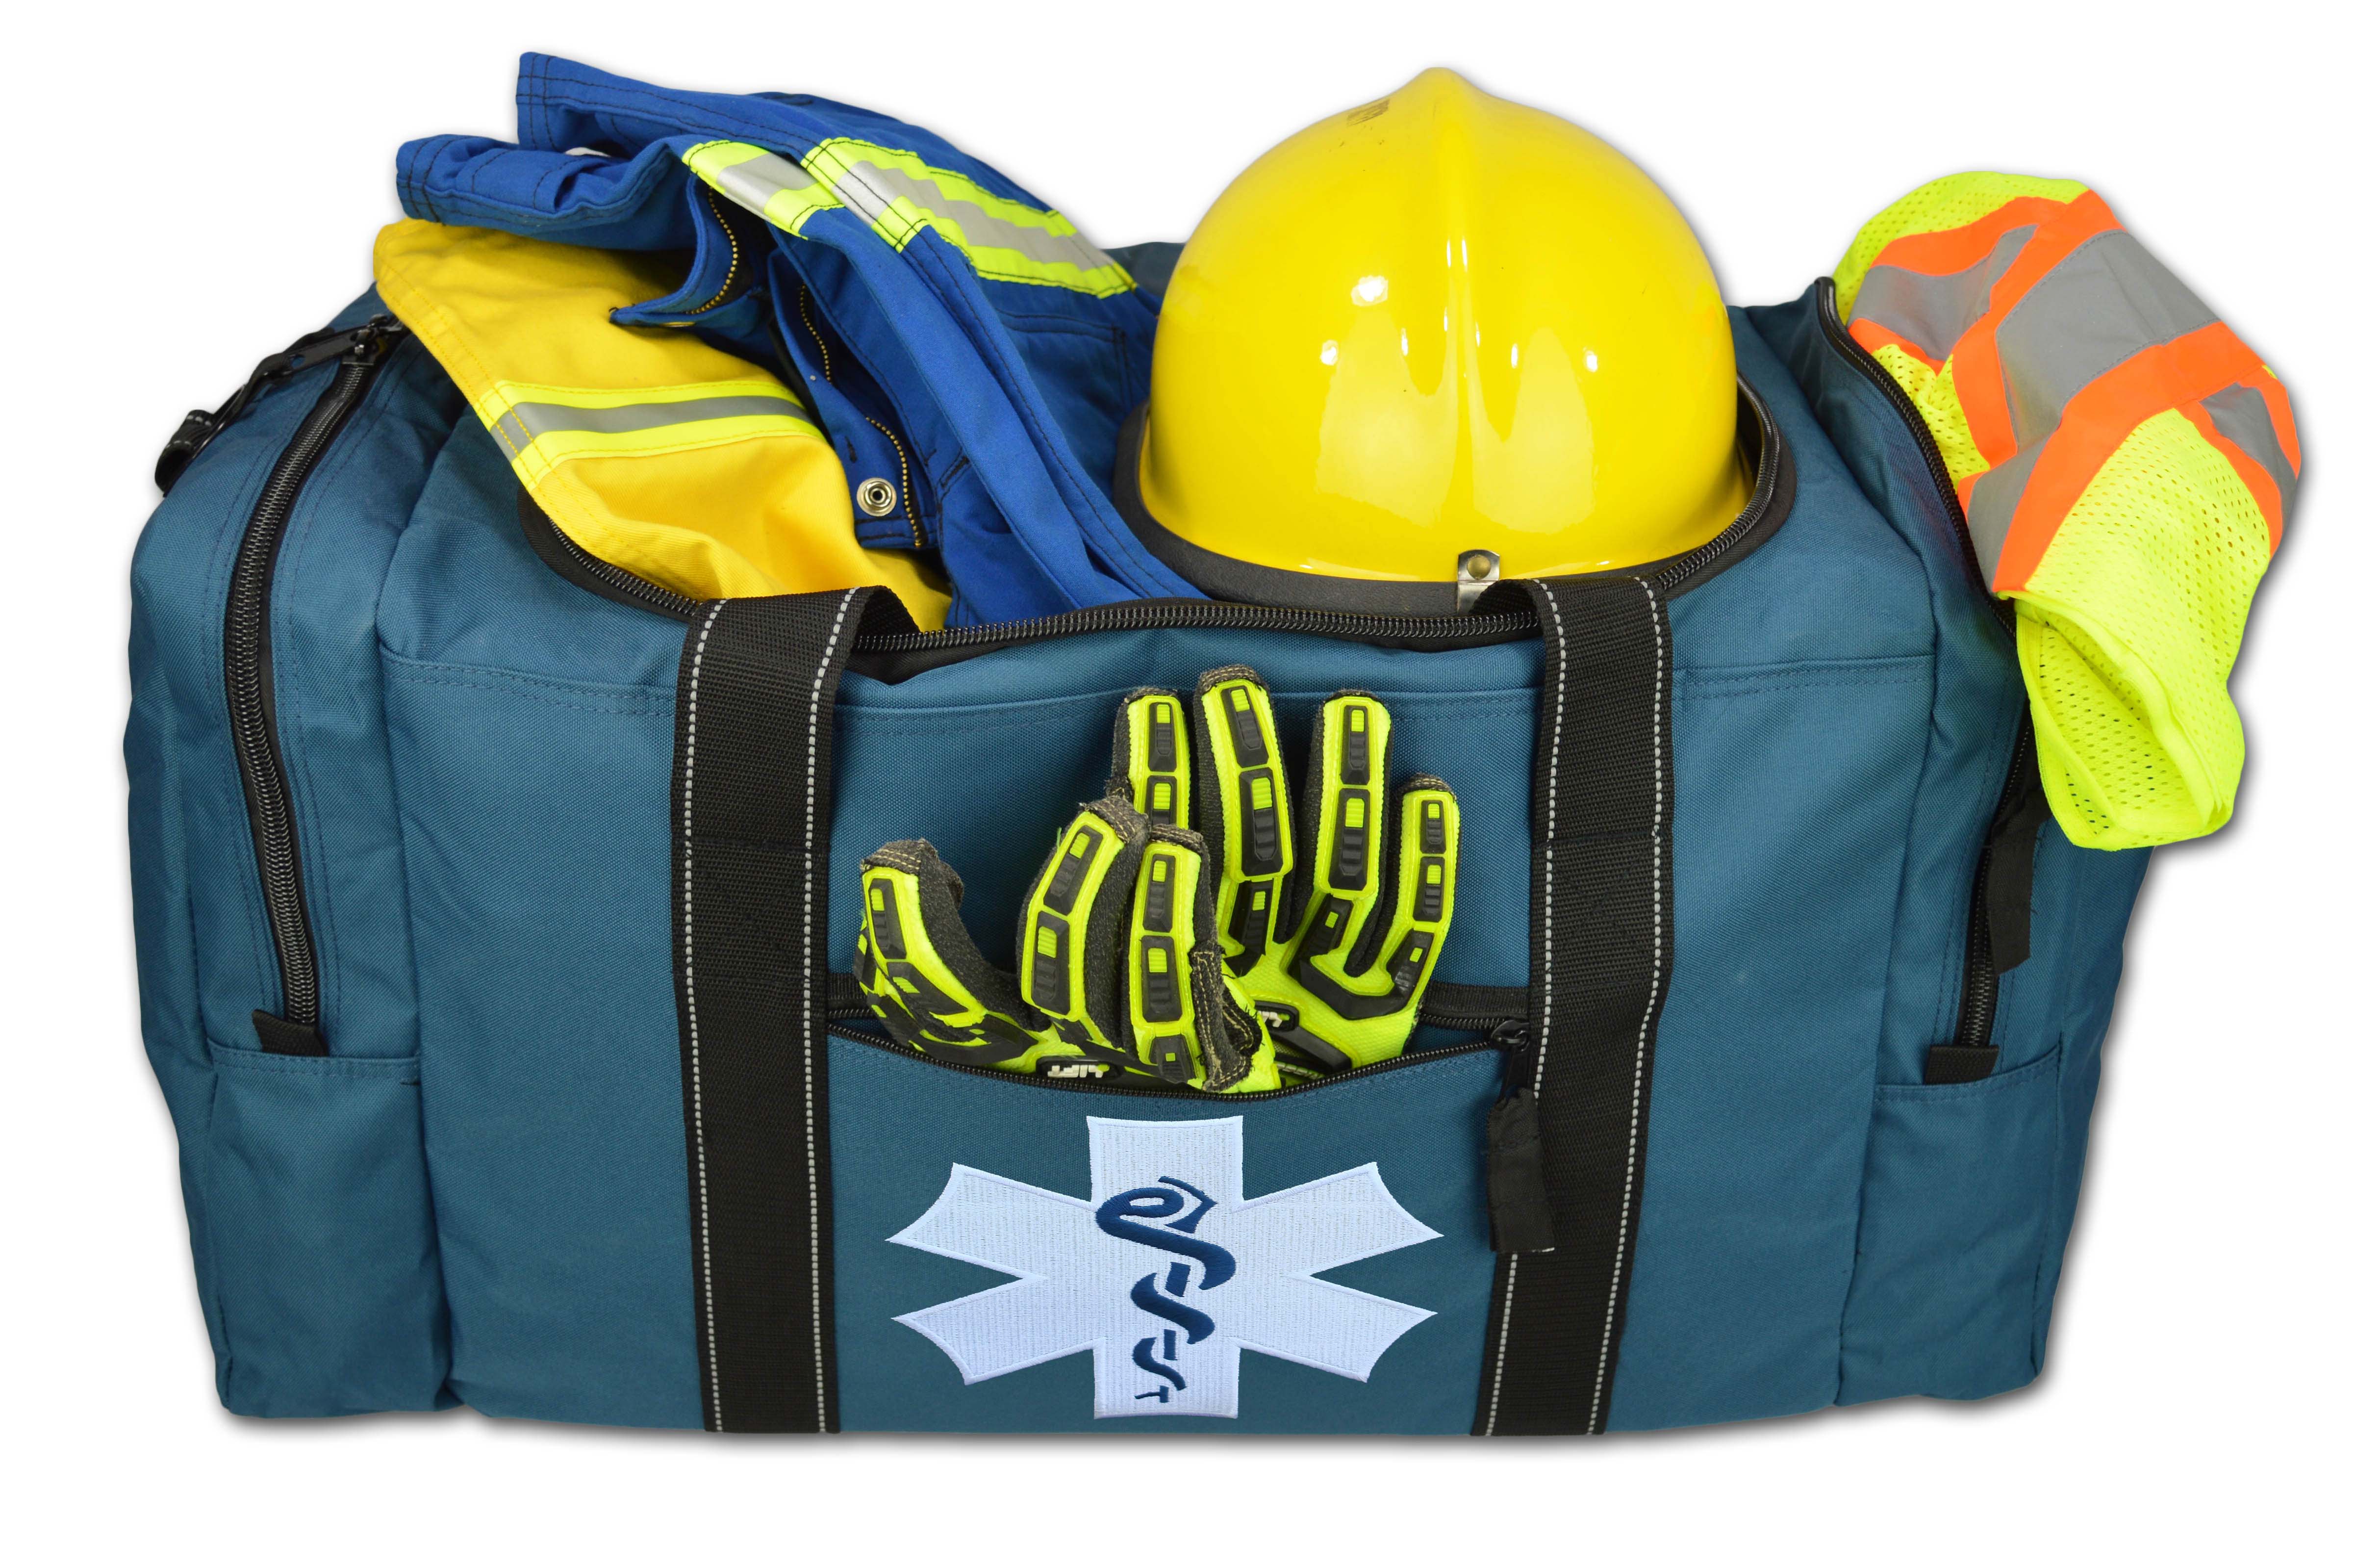 Lightning X First Responder EMS Medic Rescue Extrication EMT Jumpsuit Turnout Gear Bag - image 2 of 3